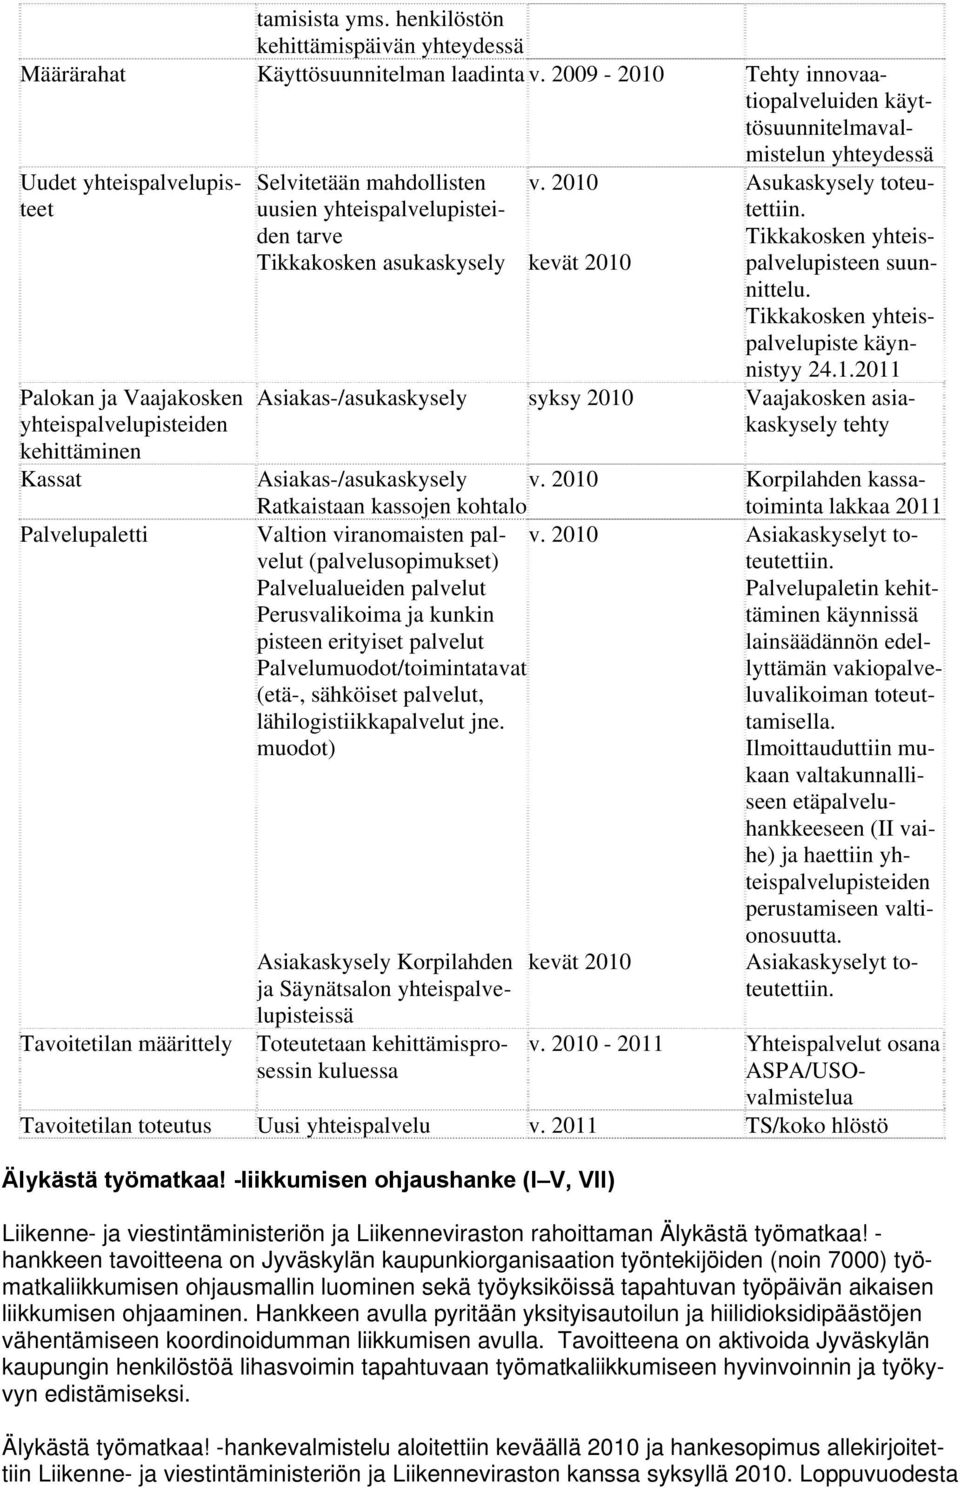 mahdollisten uusien yhteispalvelupisteiden tarve Tikkakosken asukaskysely v. 2010 kevät 2010 Asukaskysely toteutettiin. Tikkakosken yhteispalvelupisteen suunnittelu.